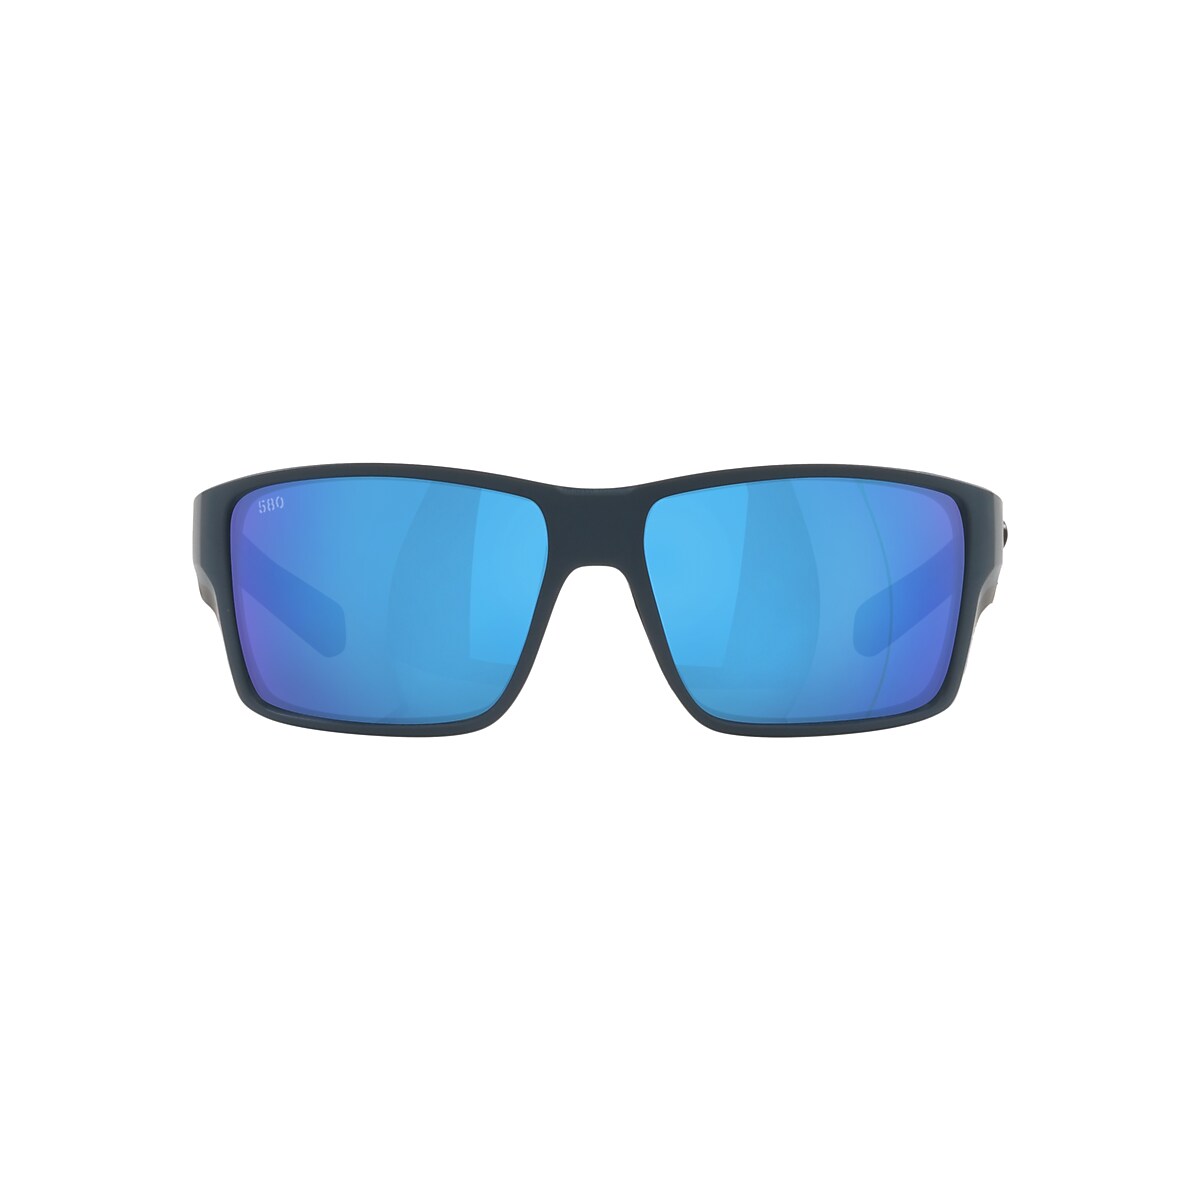 Reefton PRO Polarized Sunglasses in Blue Mirror | Costa Del Mar®